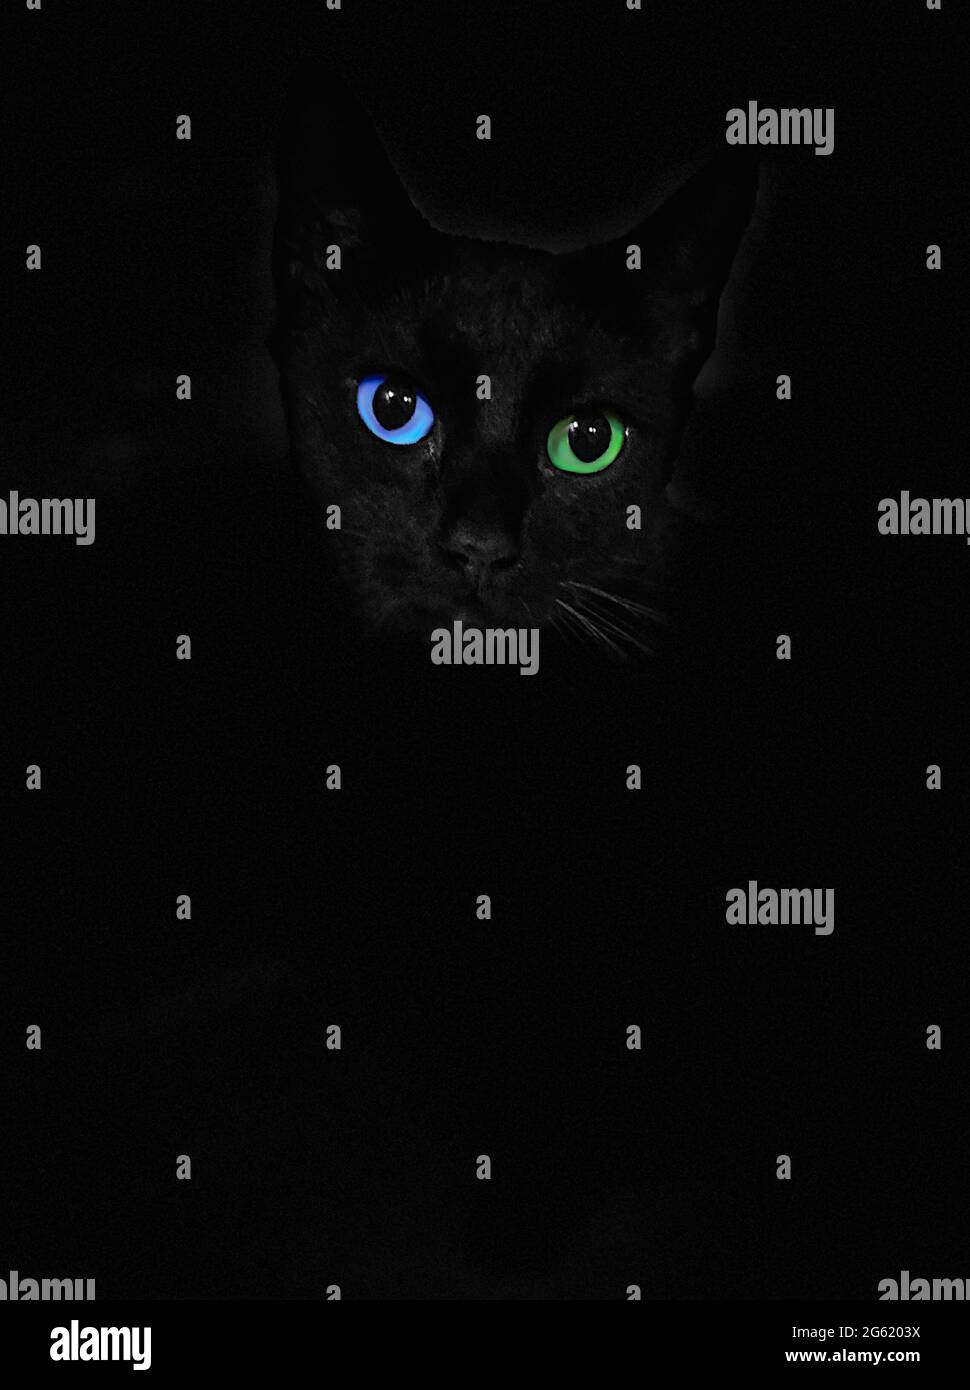 Yeux bleus et verts chat noir isolé sur fond noir Banque D'Images